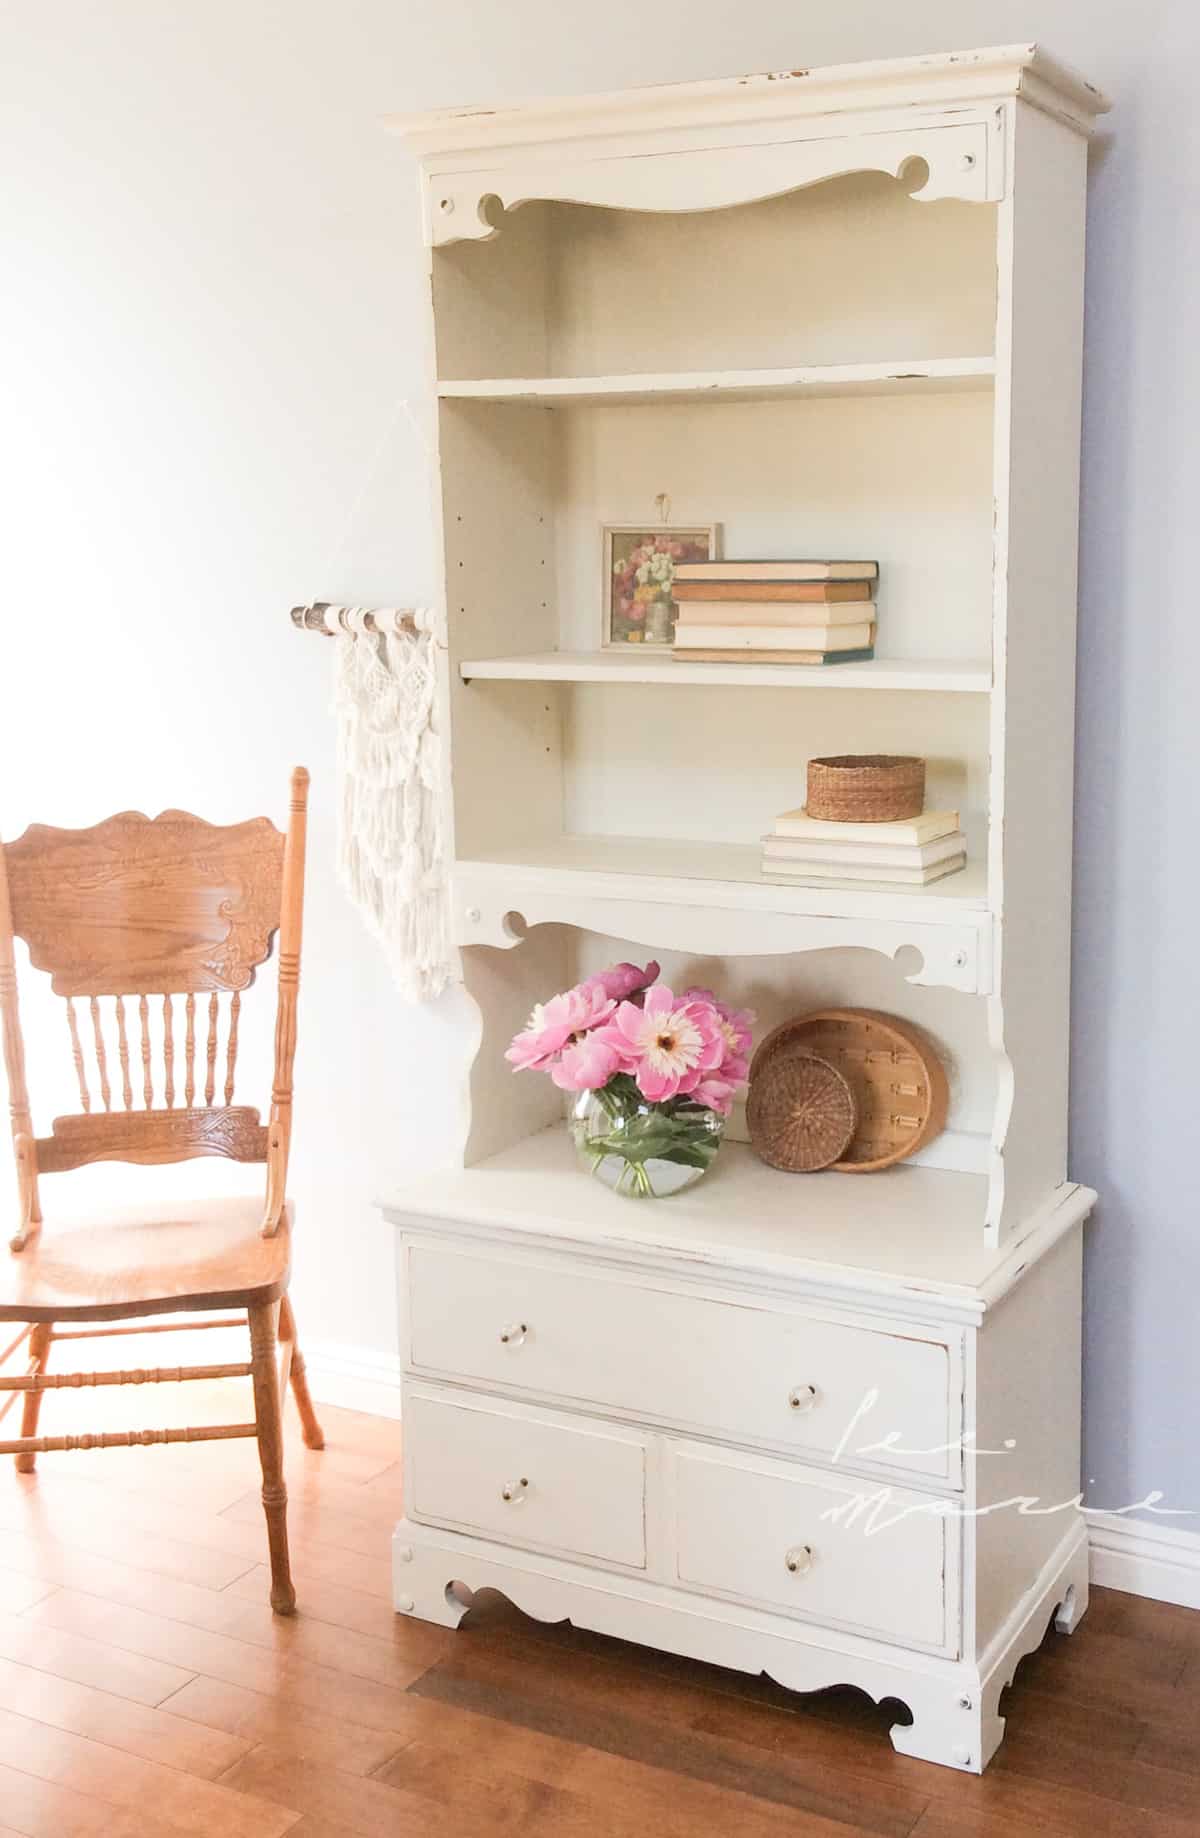 Vanilla Frosting Bookshelf #DIY #Furniturepaint #paintedfurniture #chalkpaint #homedecor #bookshelf #white #countrychicpaint - blog.countrychicpaint.com